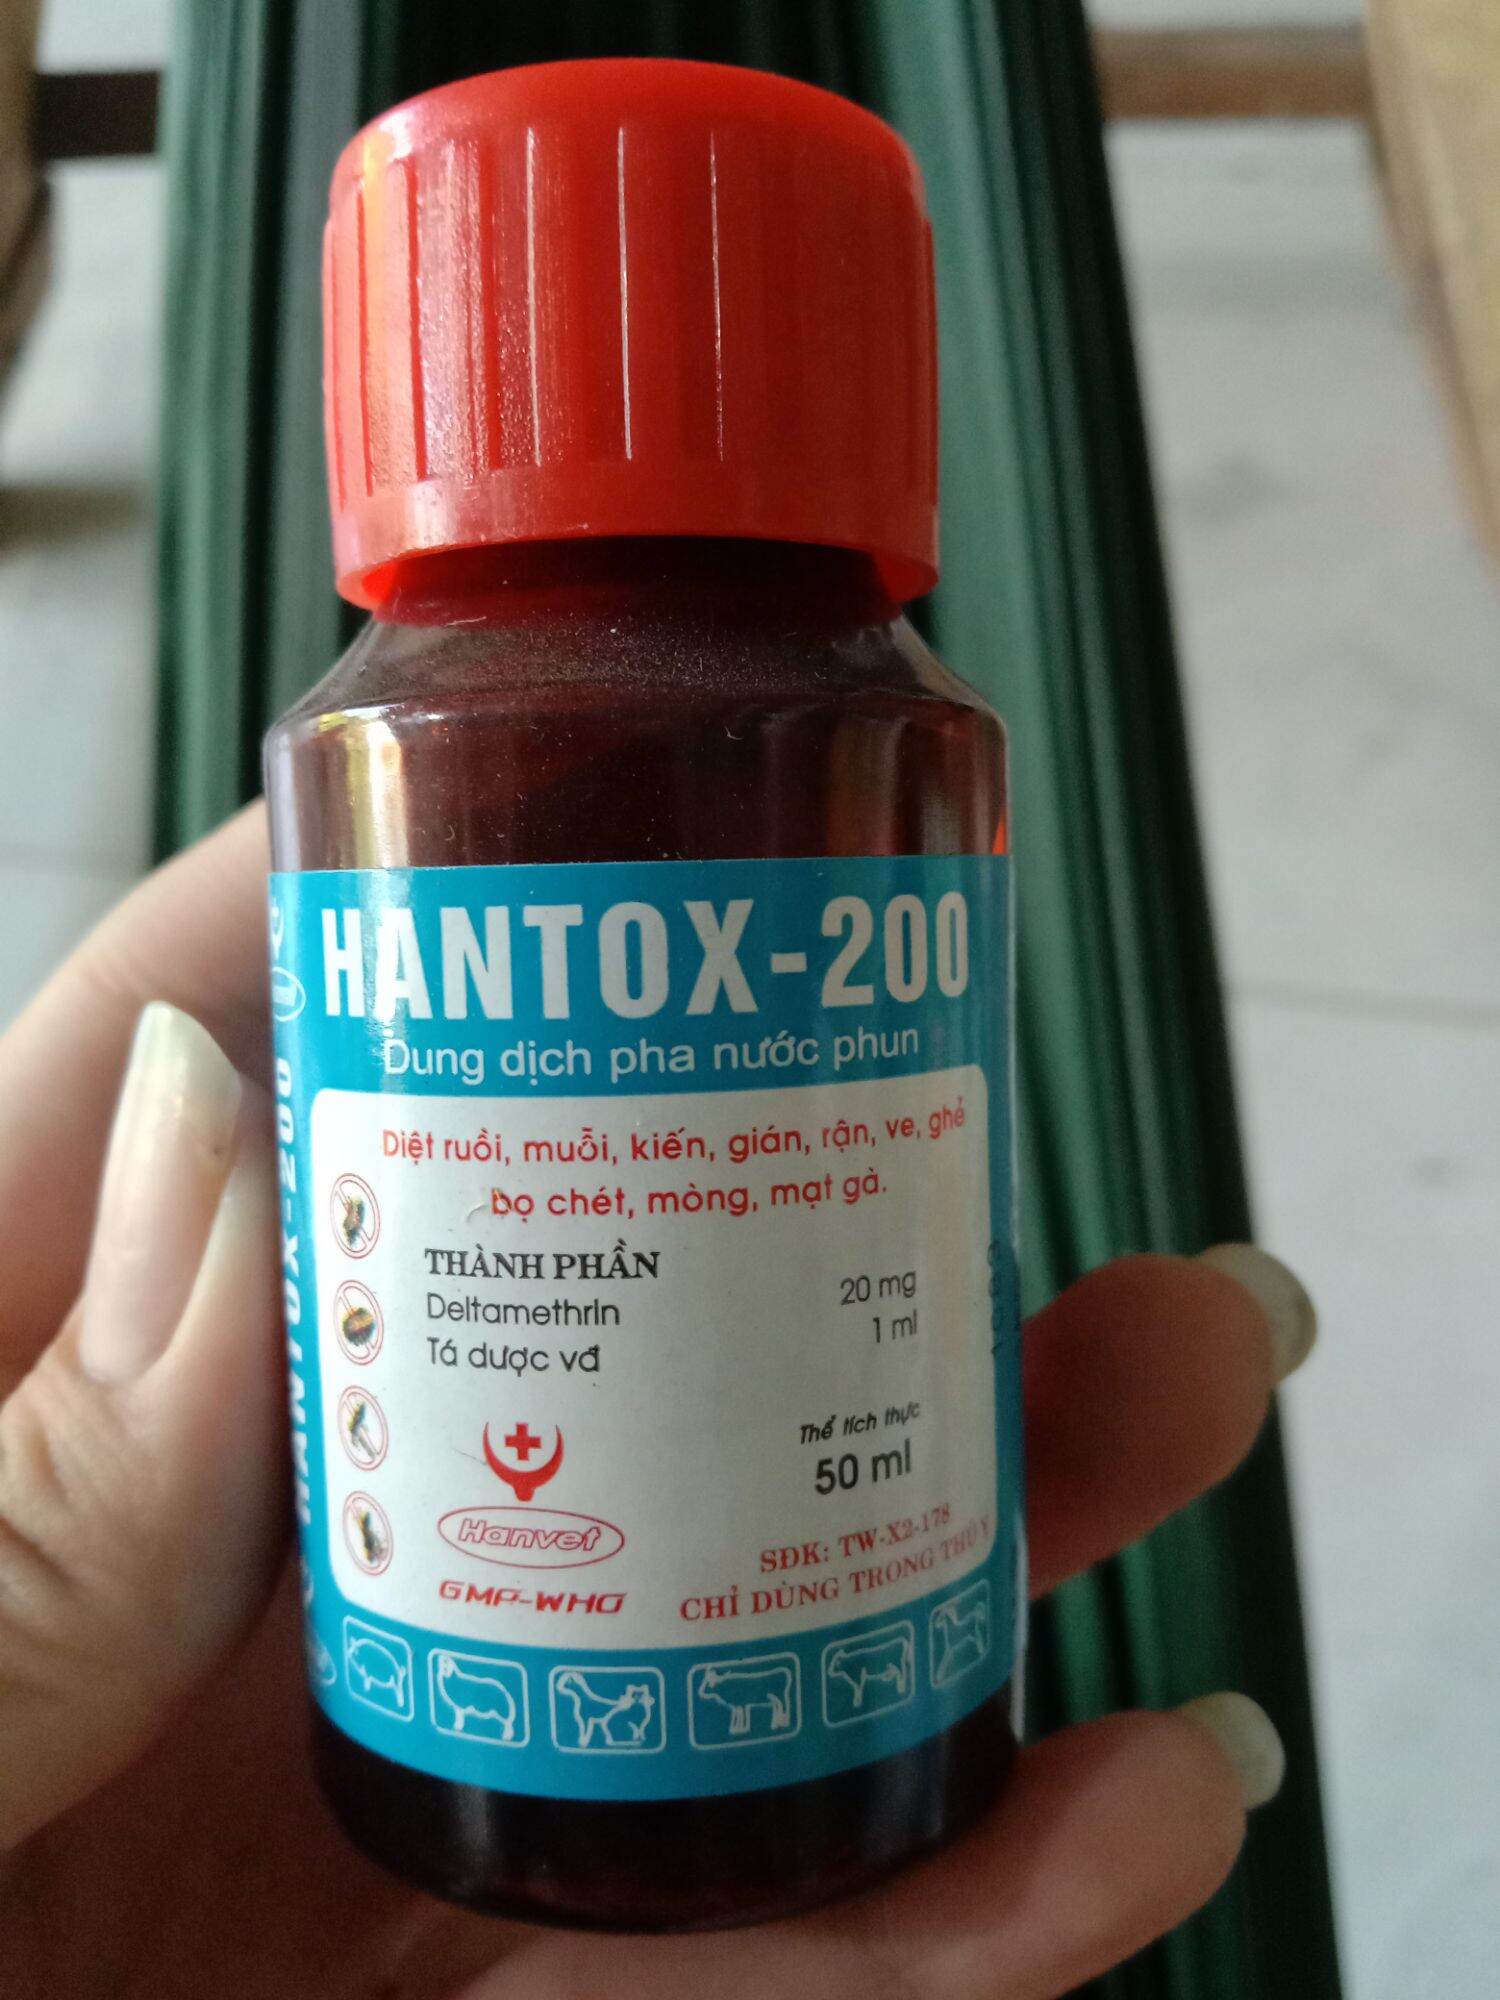 HANTOX-200 CHAI 50ML_Phun xịt ruồi muỗi,kiến gián, rận ve,ghẻ bọ chét, mòng